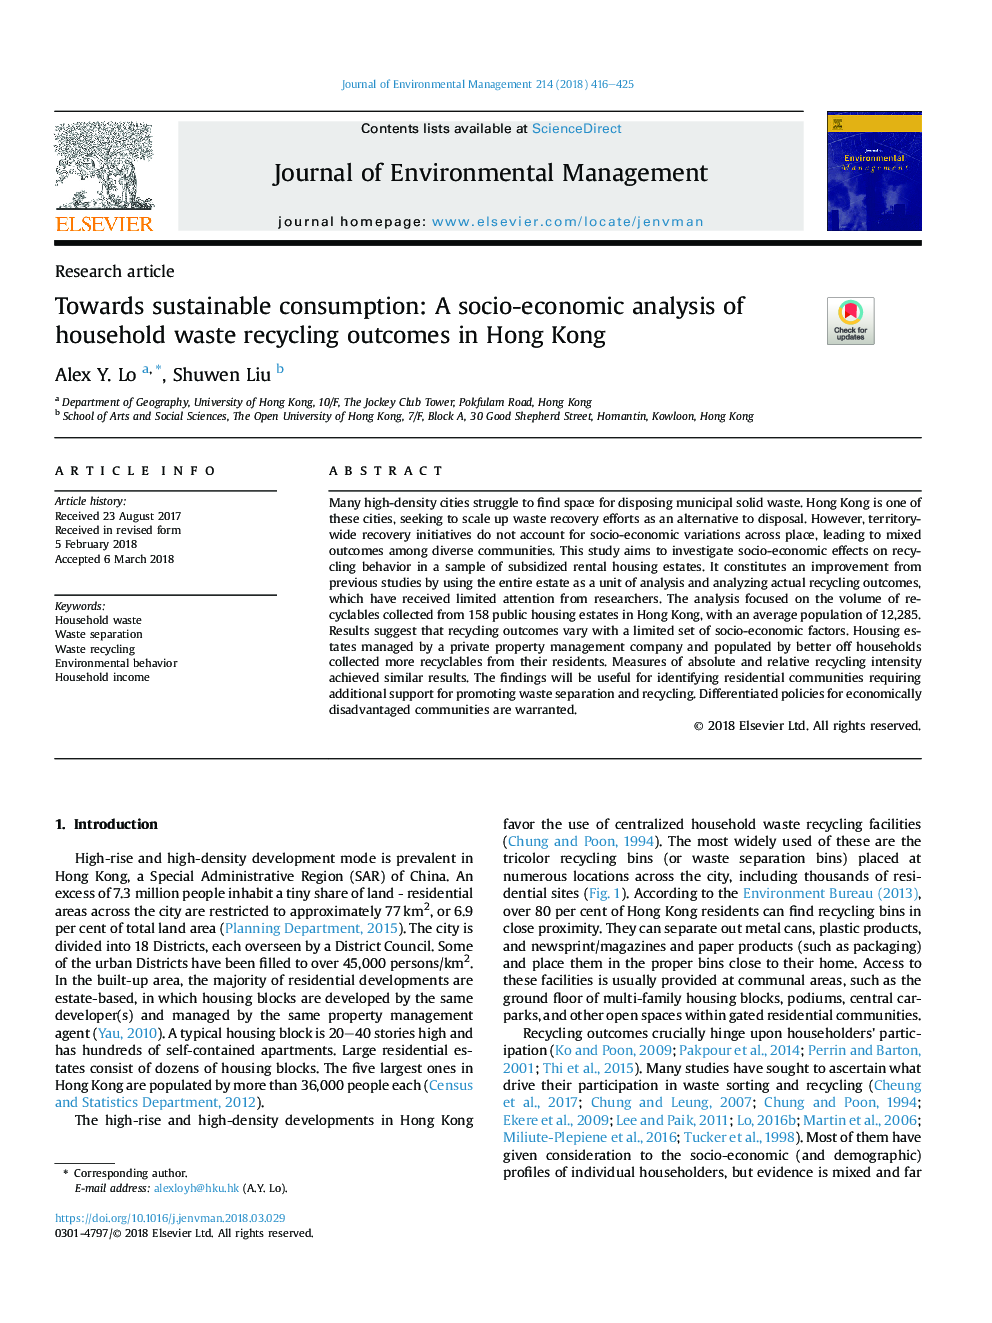 به سوی مصرف پایدار: تجزیه و تحلیل اجتماعی و اقتصادی نتایج بازیافت زباله خانگی در هنگ کنگ 